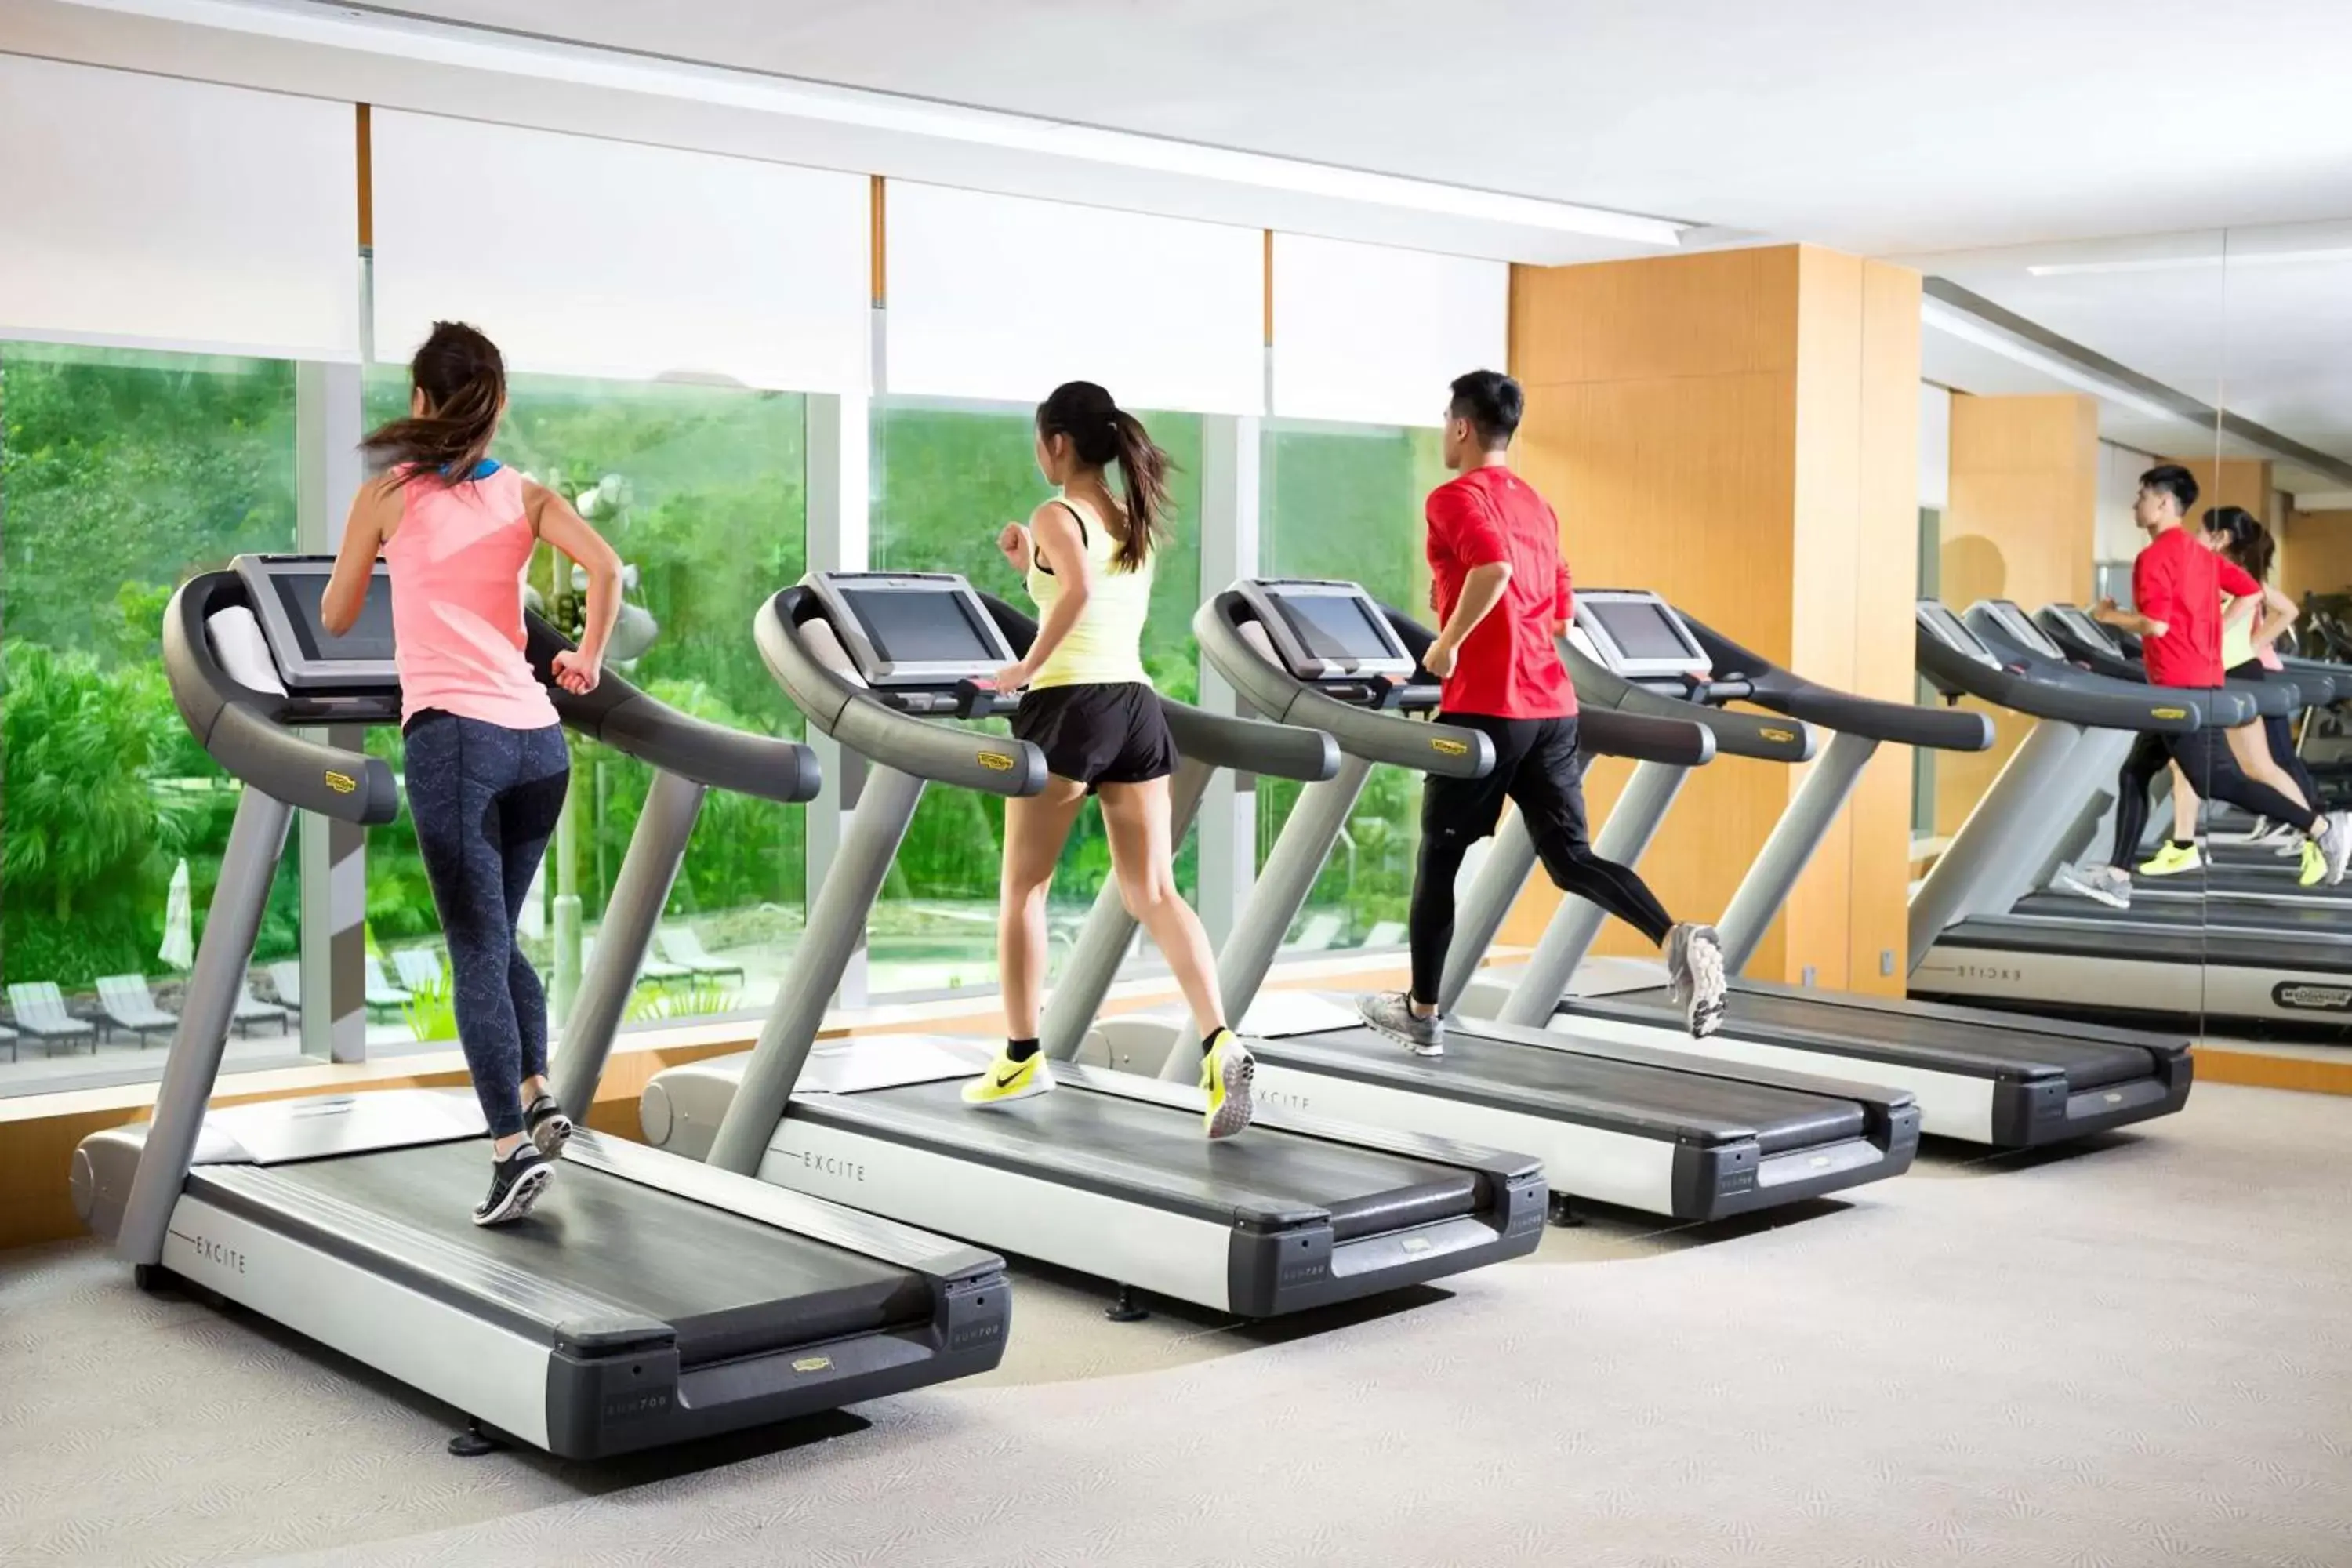 Fitness centre/facilities, Fitness Center/Facilities in Hyatt Regency Hong Kong, Sha Tin